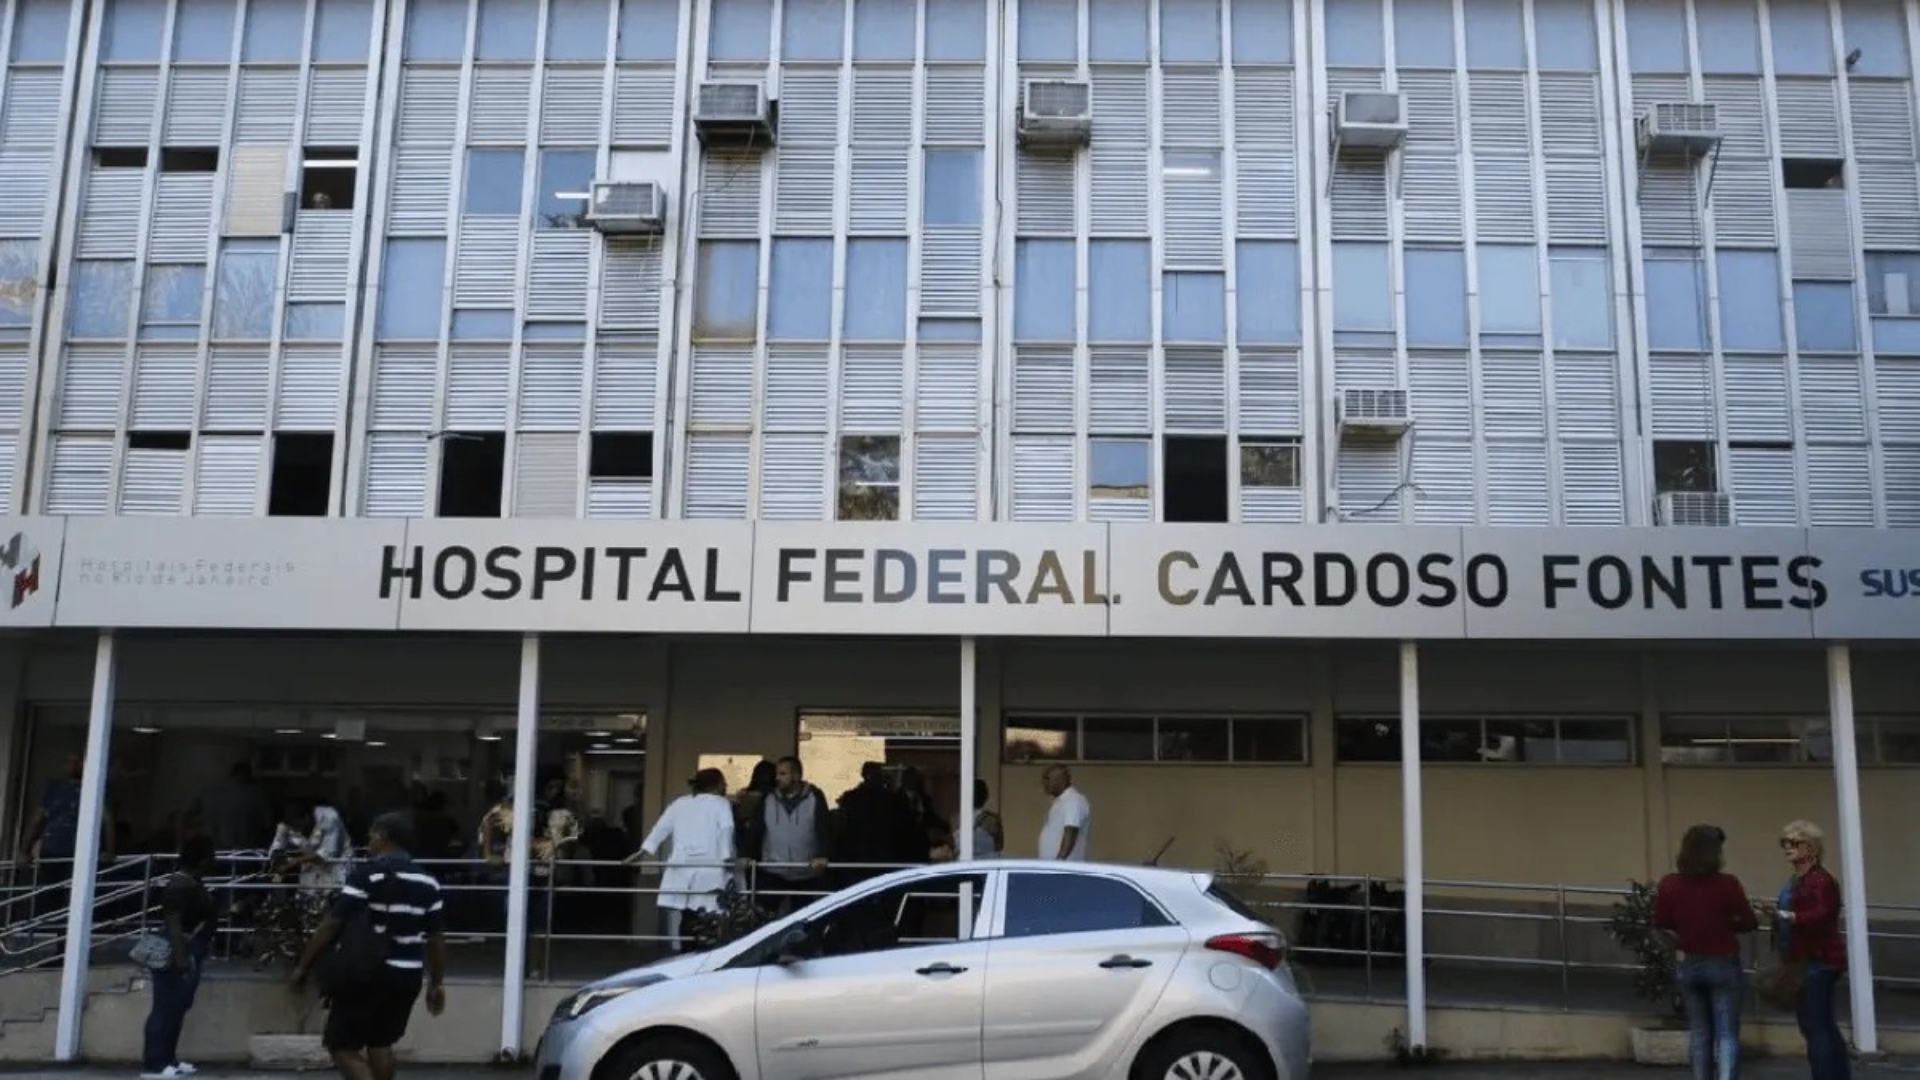 Hospitais Federais no RJ paralisam devido à greve, seis unidades de saúde foram afetadas